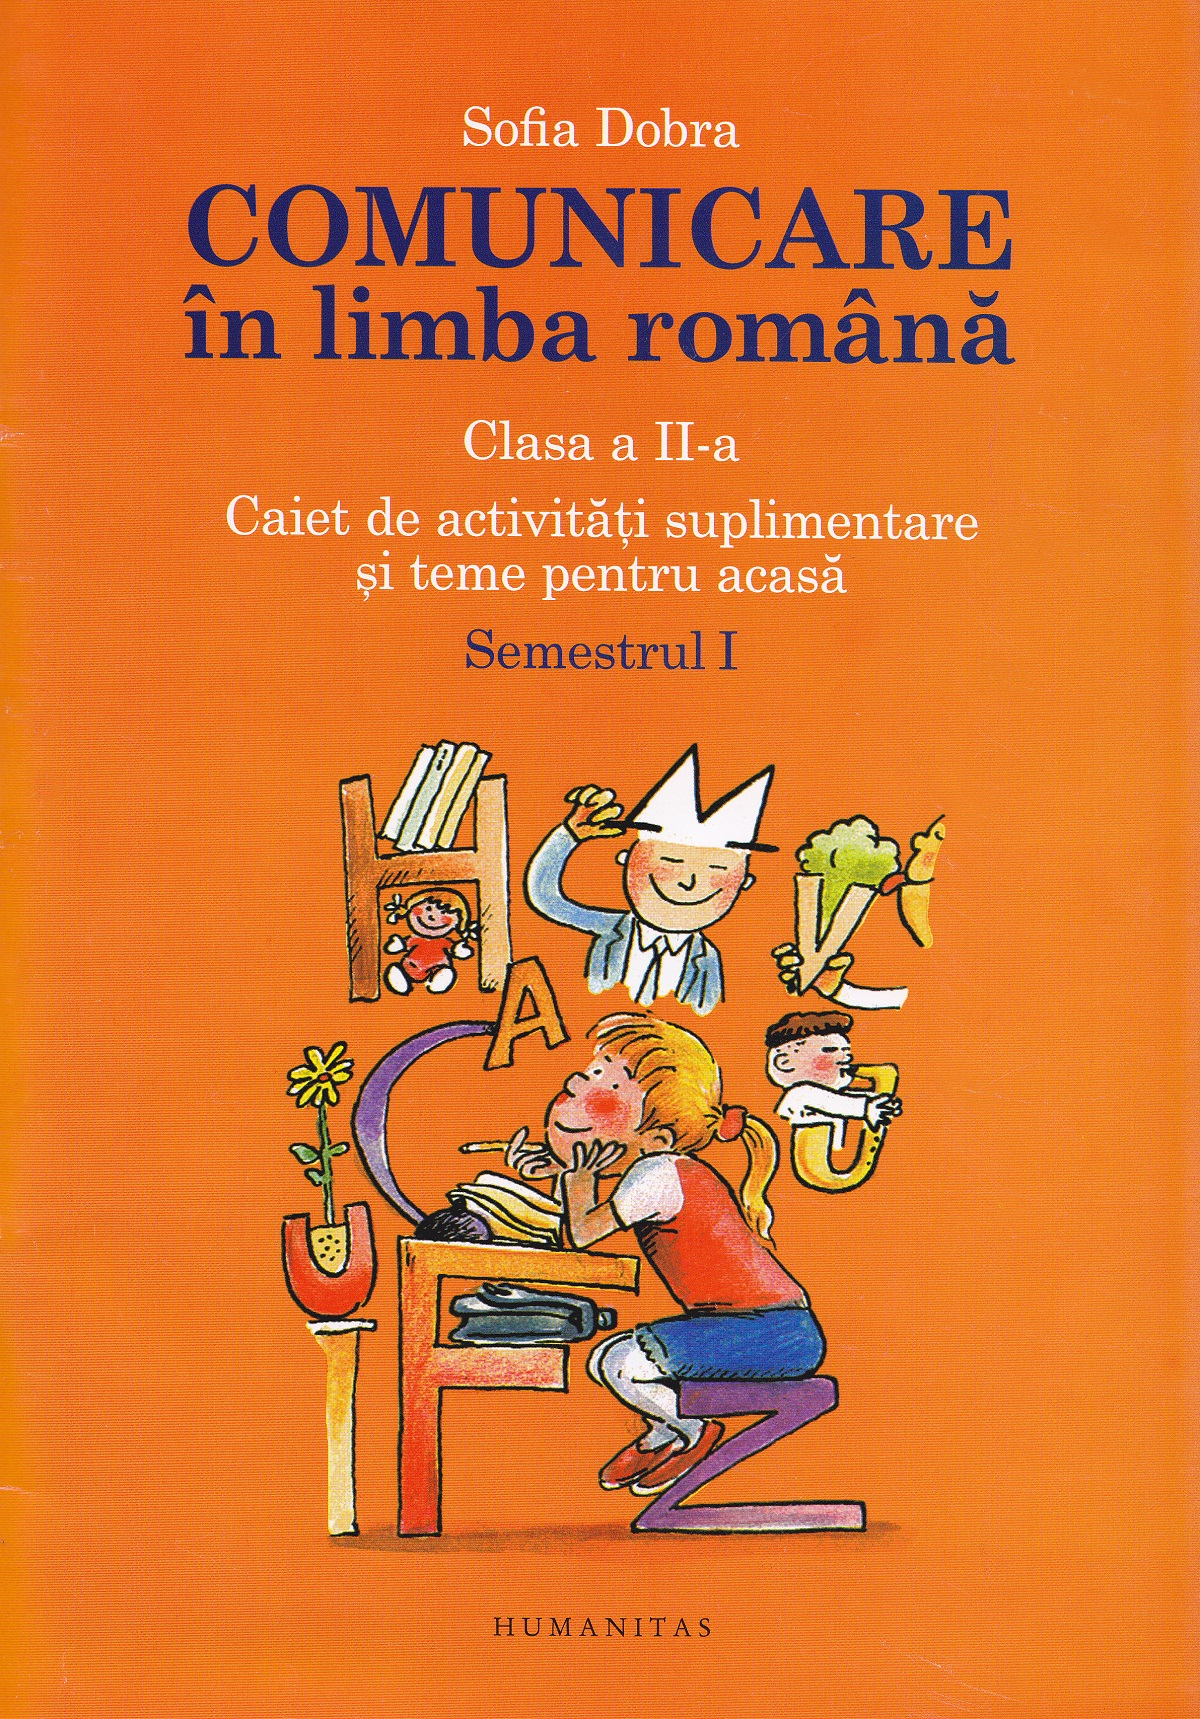 Comunicare in limba romana - Clasa 2 - Caiet Sem.1 - Sofia Dobra